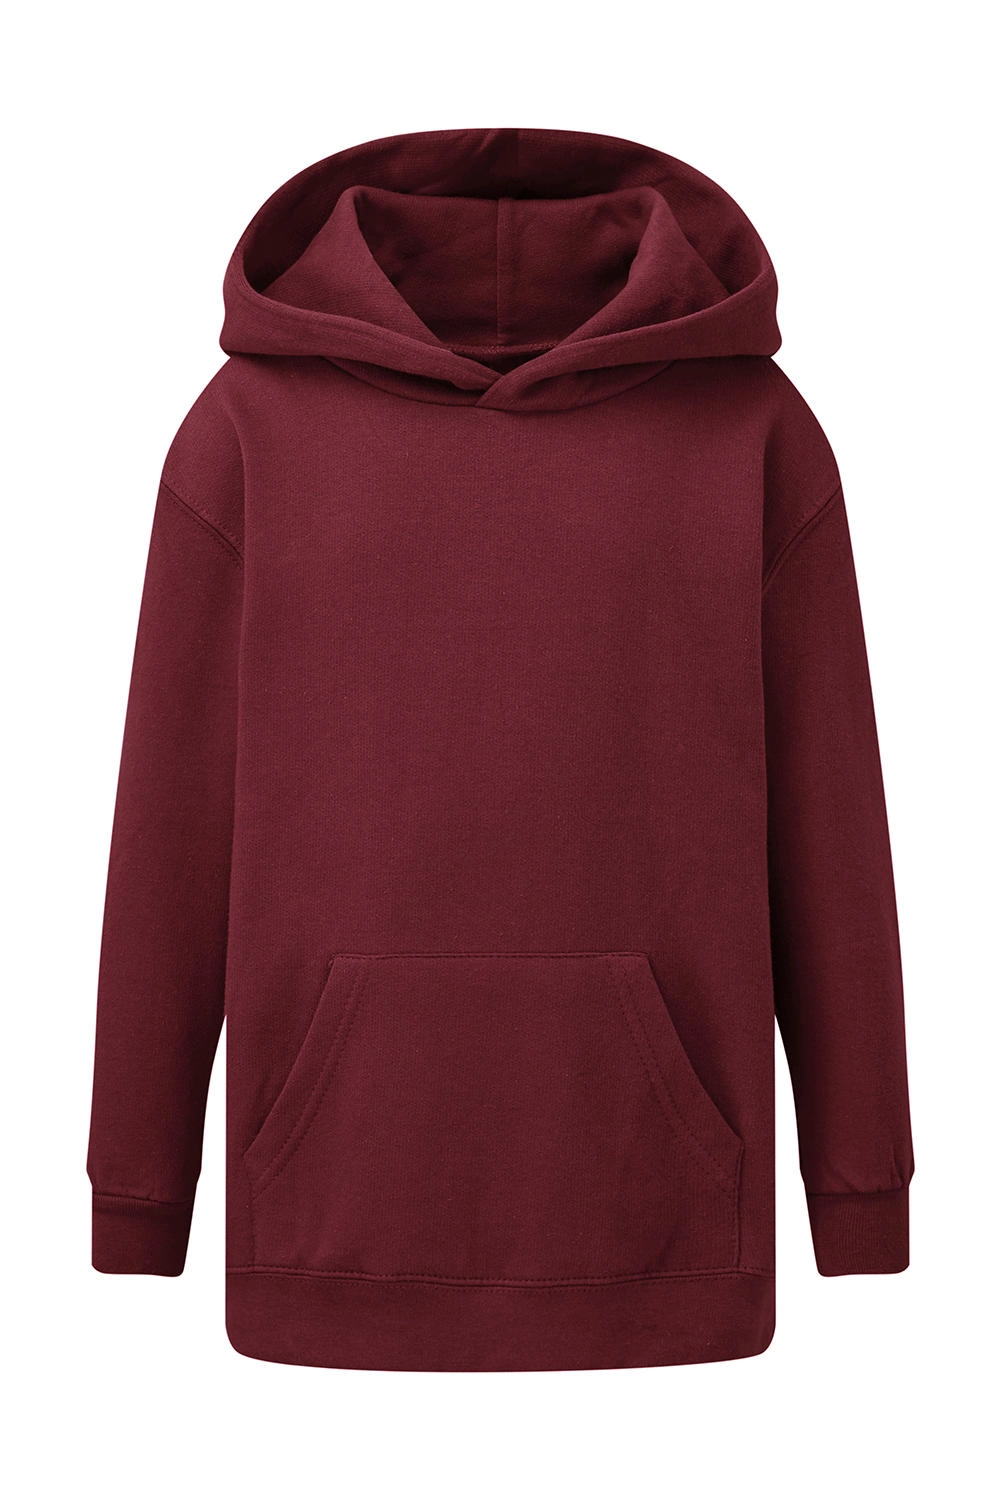 Hooded Sweatshirt Kids zum Besticken und Bedrucken in der Farbe Burgundy mit Ihren Logo, Schriftzug oder Motiv.